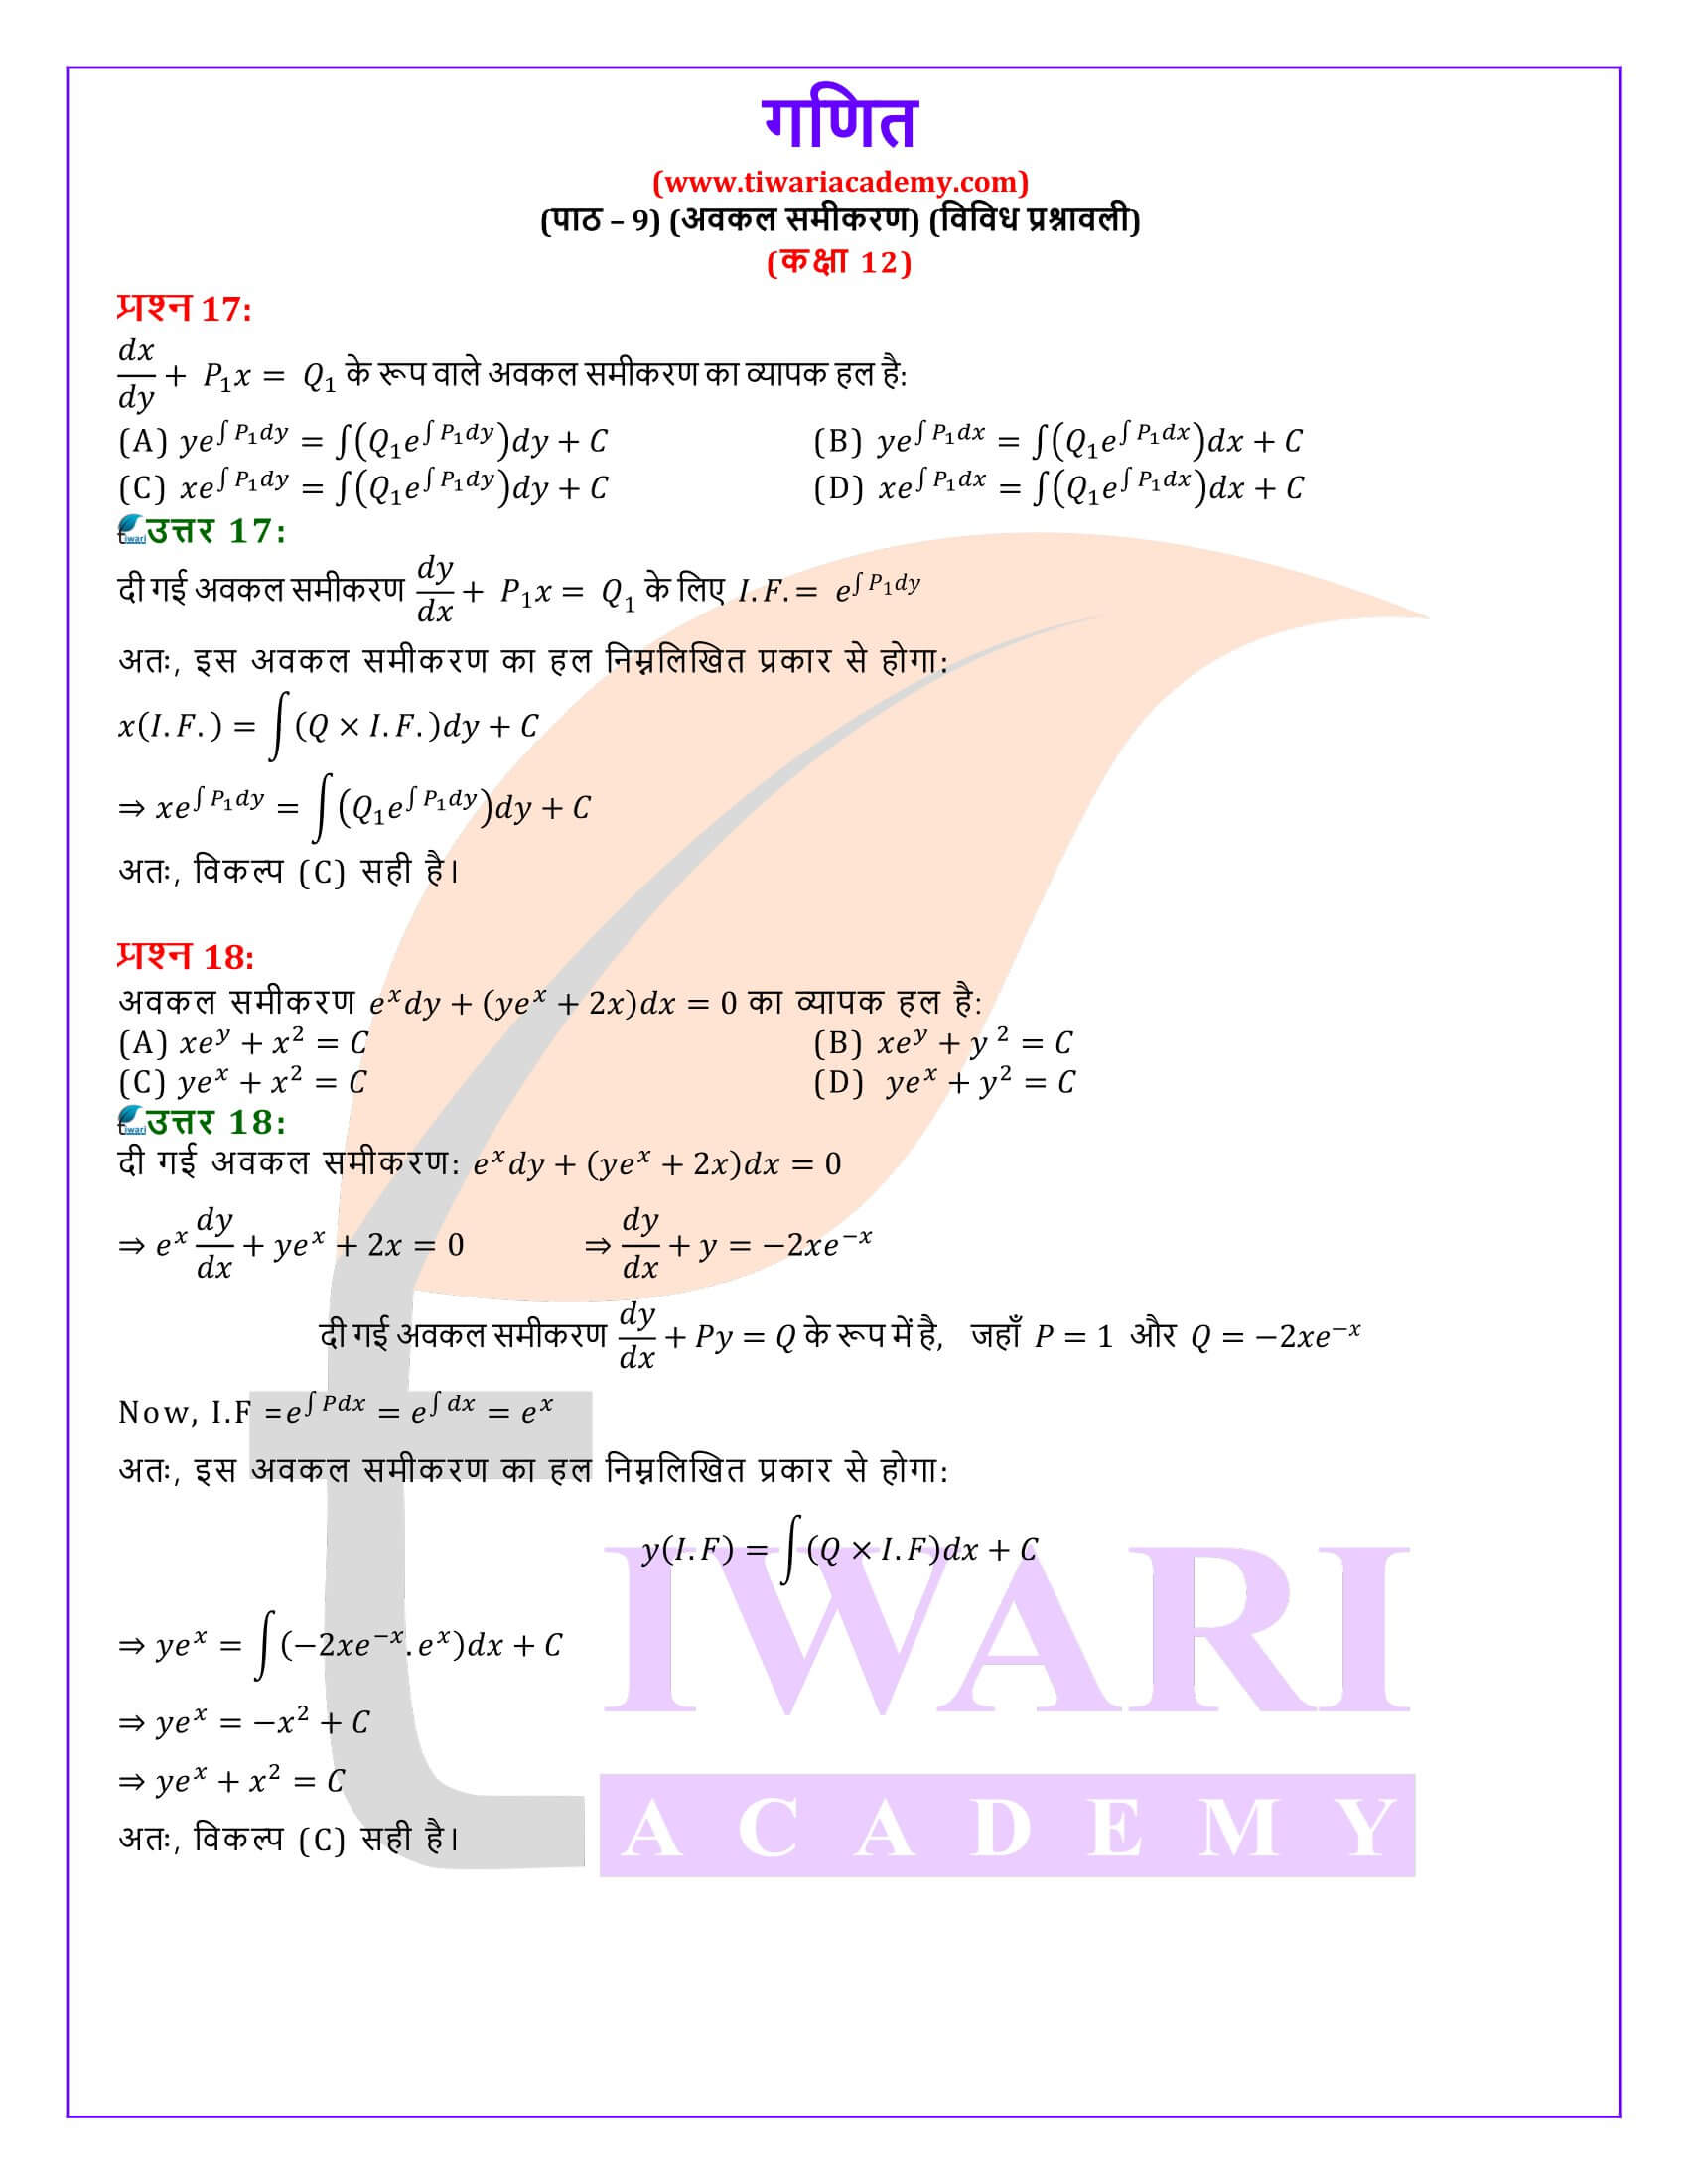 कक्षा 12 गणित अध्याय 9 विविध प्रश्नावली हिंदी में उत्तर